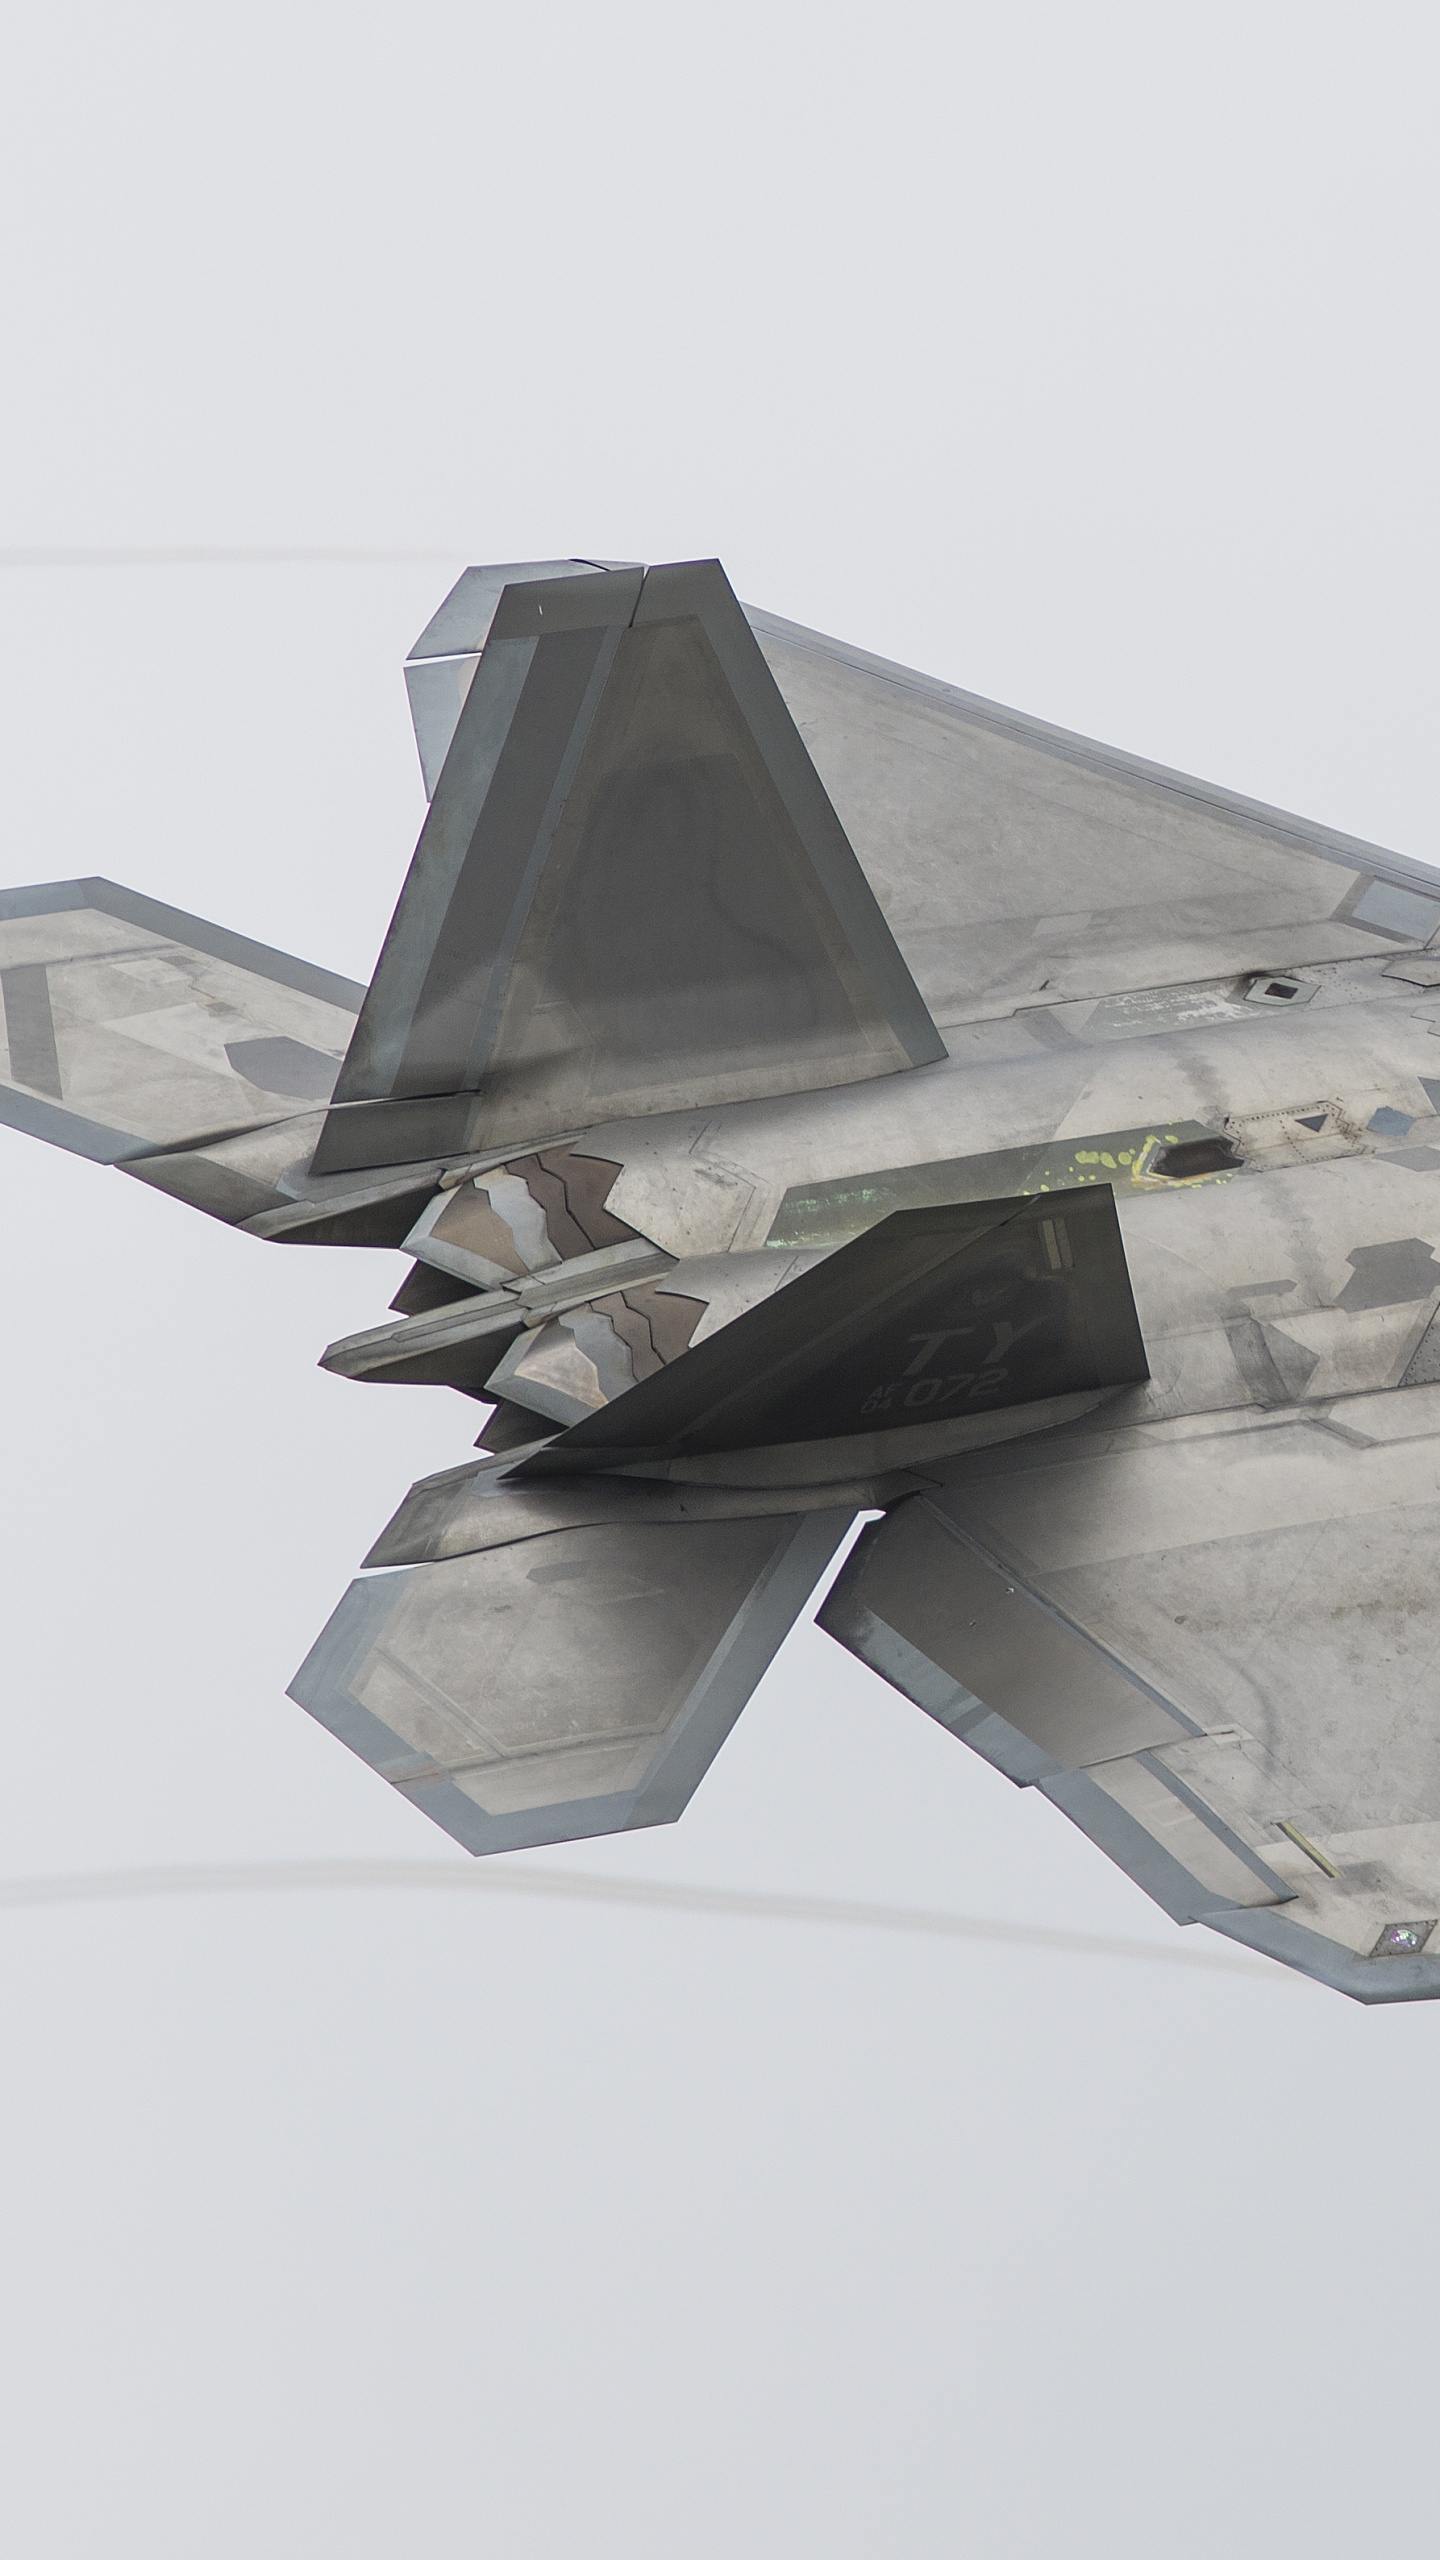 Grauer Kampfjet in Der Luft. Wallpaper in 1440x2560 Resolution